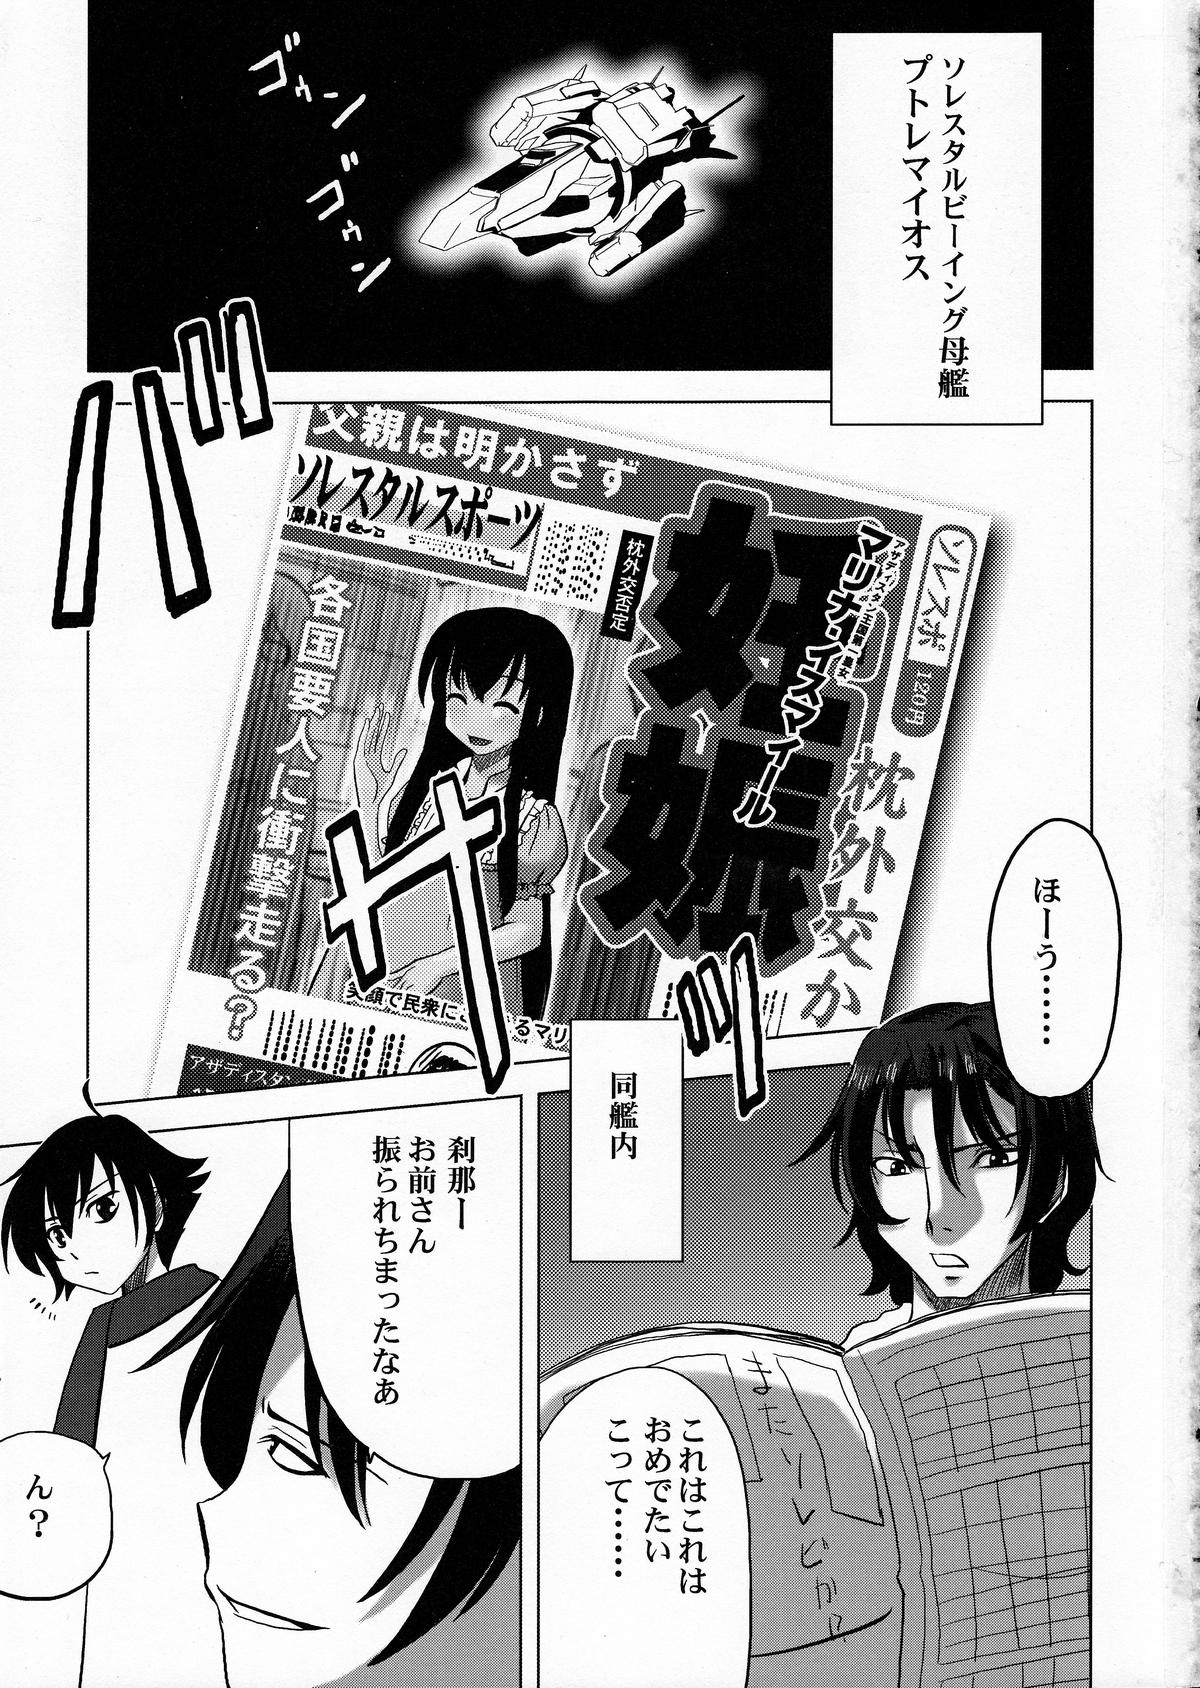 Interracial Hardcore Maguro Kingdom 2009 - Gundam 00 Calcinha - Page 2